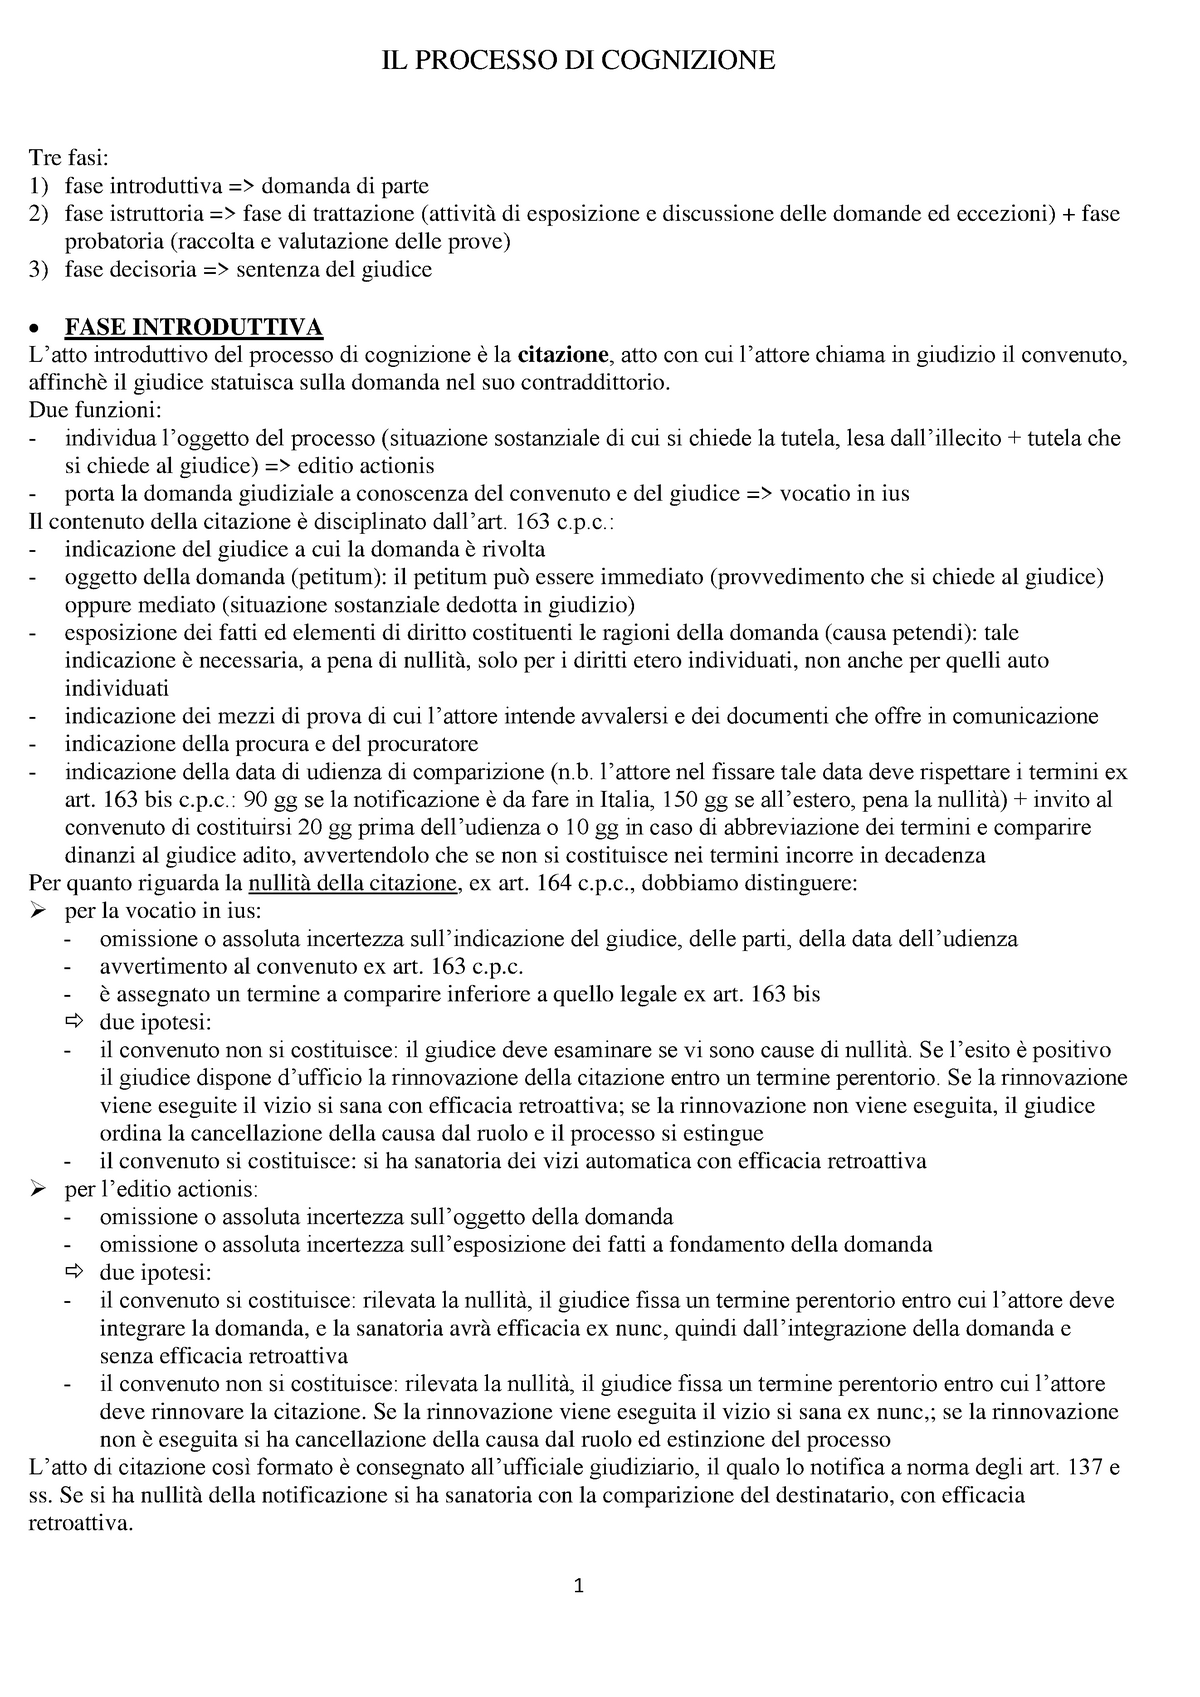 Riassunto Diritto processuale civile Luiso Volume 2 - IL PROCESSO DI ...